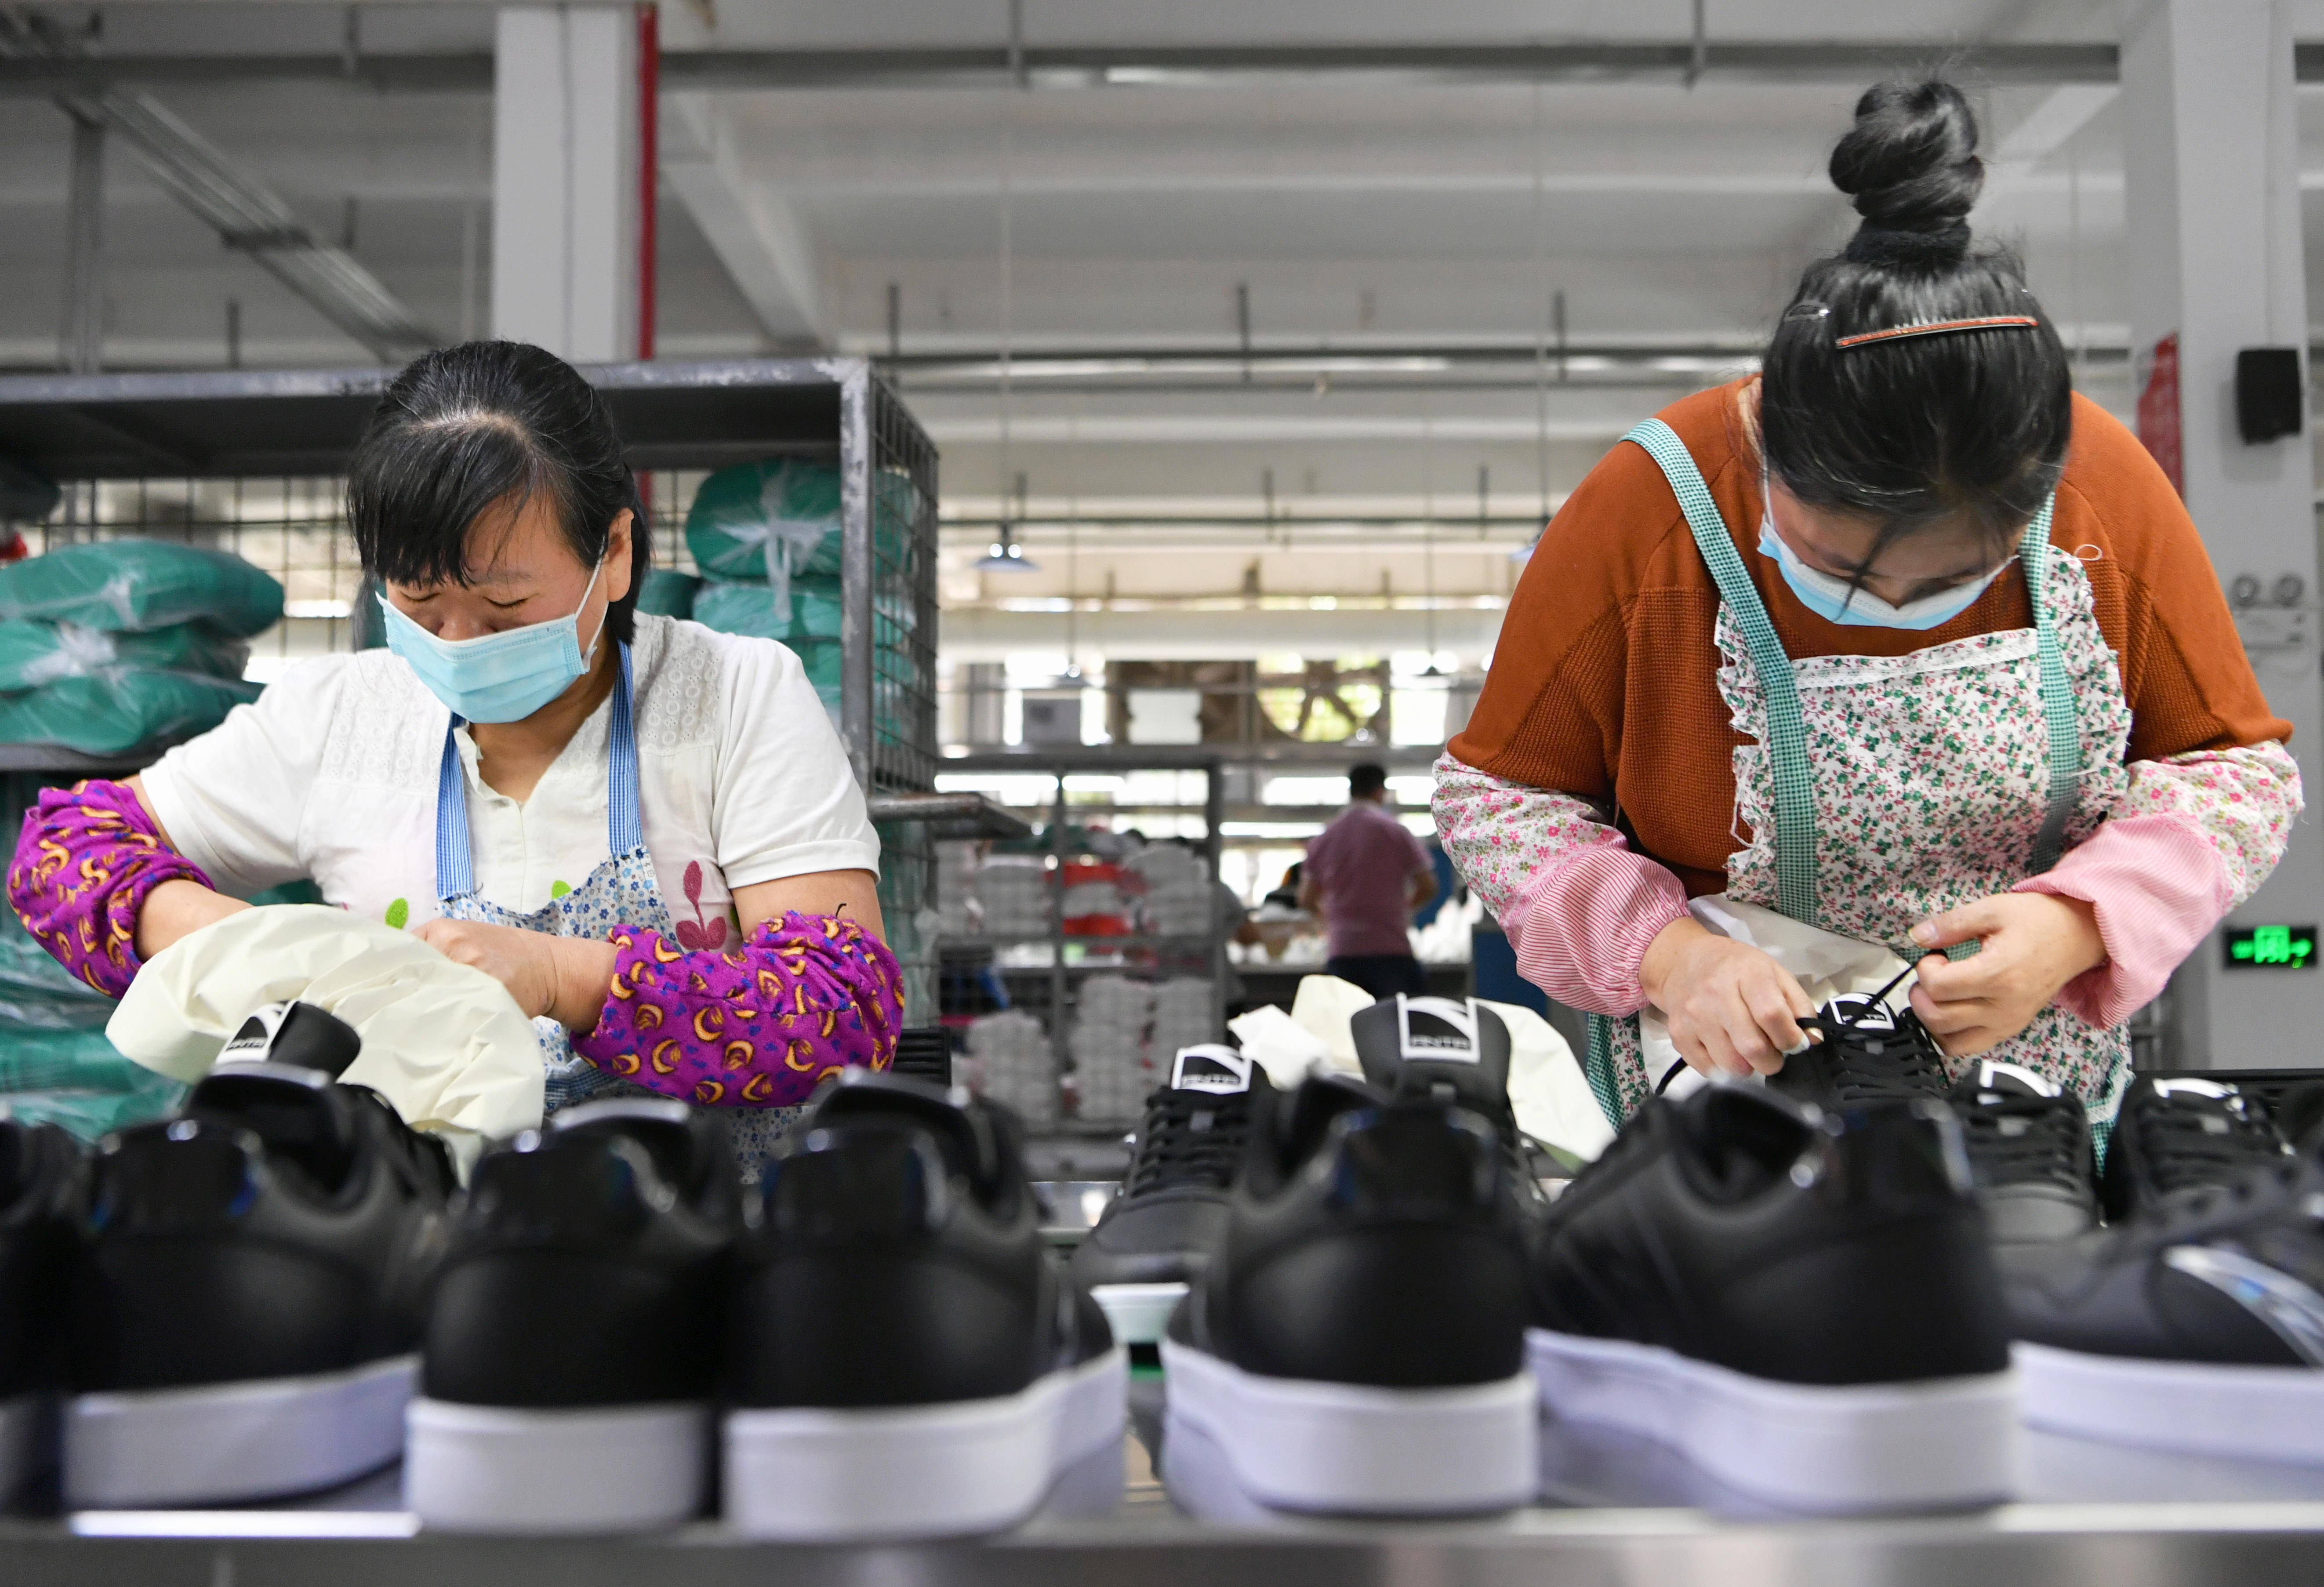 4月27日,在莆田市城厢区的一家鞋企生产线上,工人们在抓紧生产